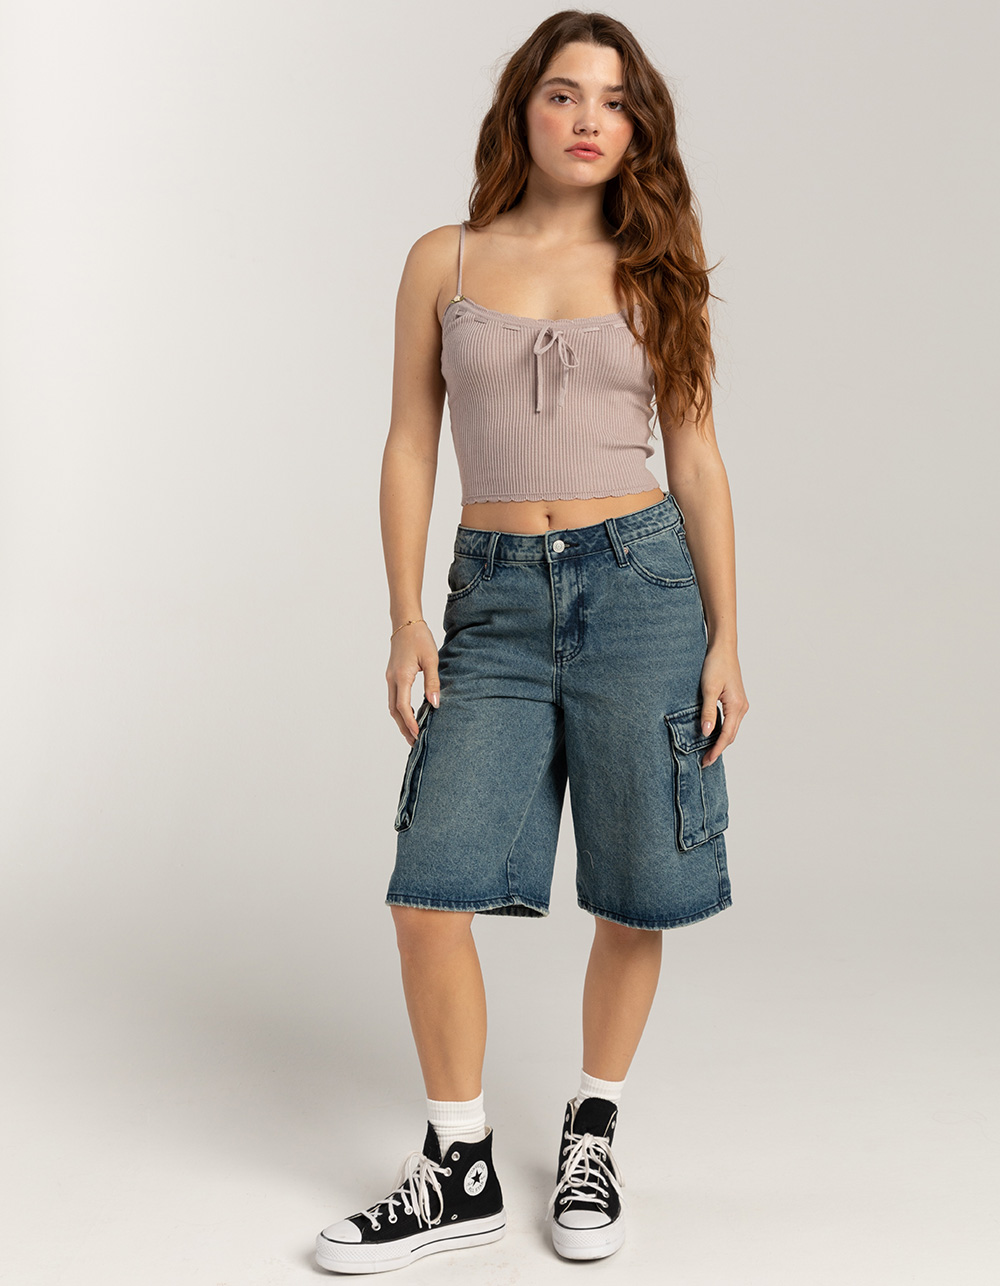 Women Summer Calf Length Pants Candy Color Capri Pants Jeans Lady